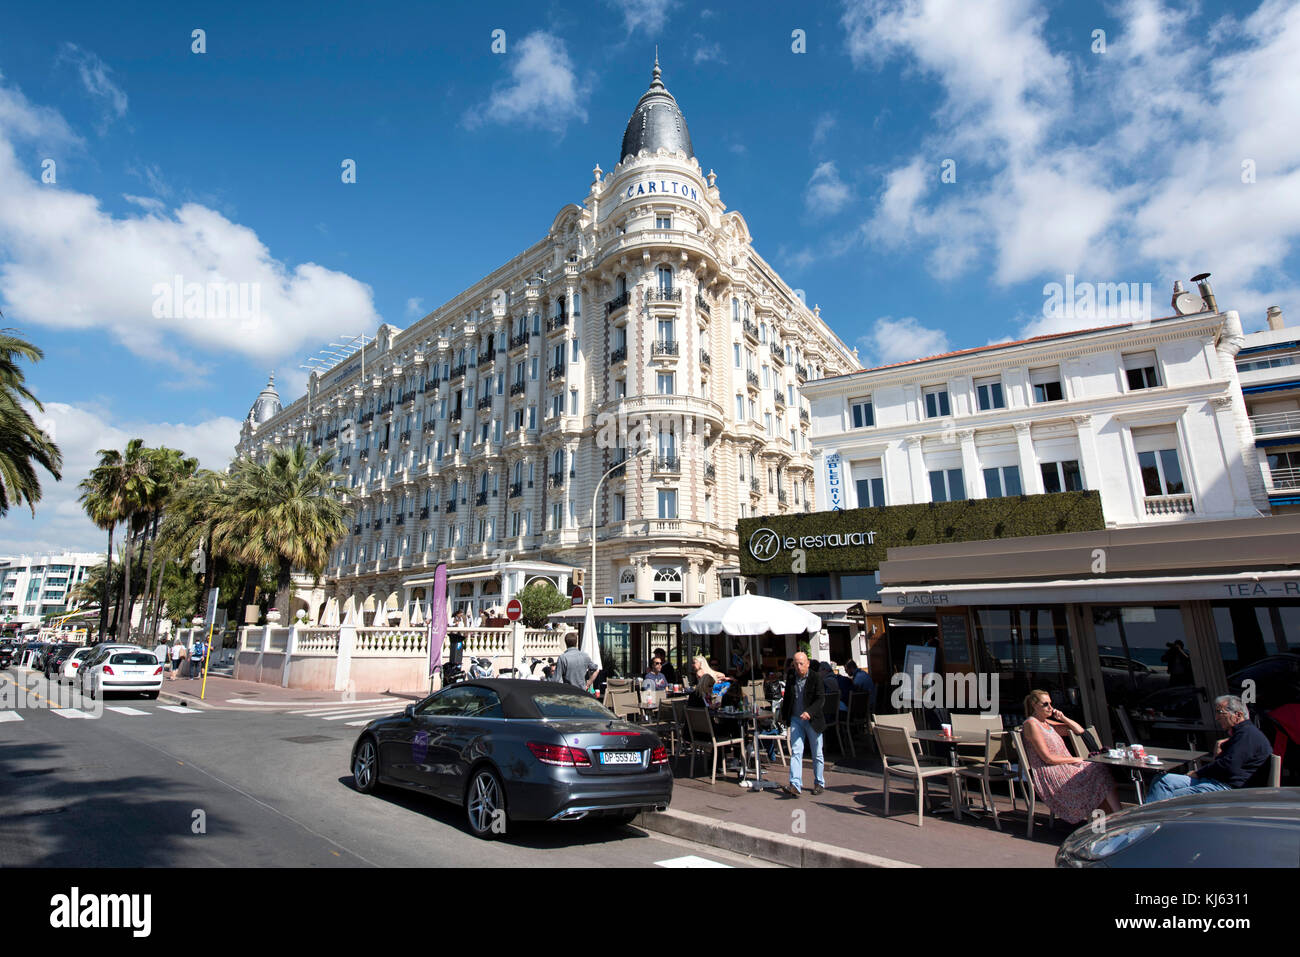 Cannes (Frankreich): das InterContinental Carlton Hotel am Boulevard de la Croisette. Das Hotel ist als National Historic Landmark registriert ( Stockfoto